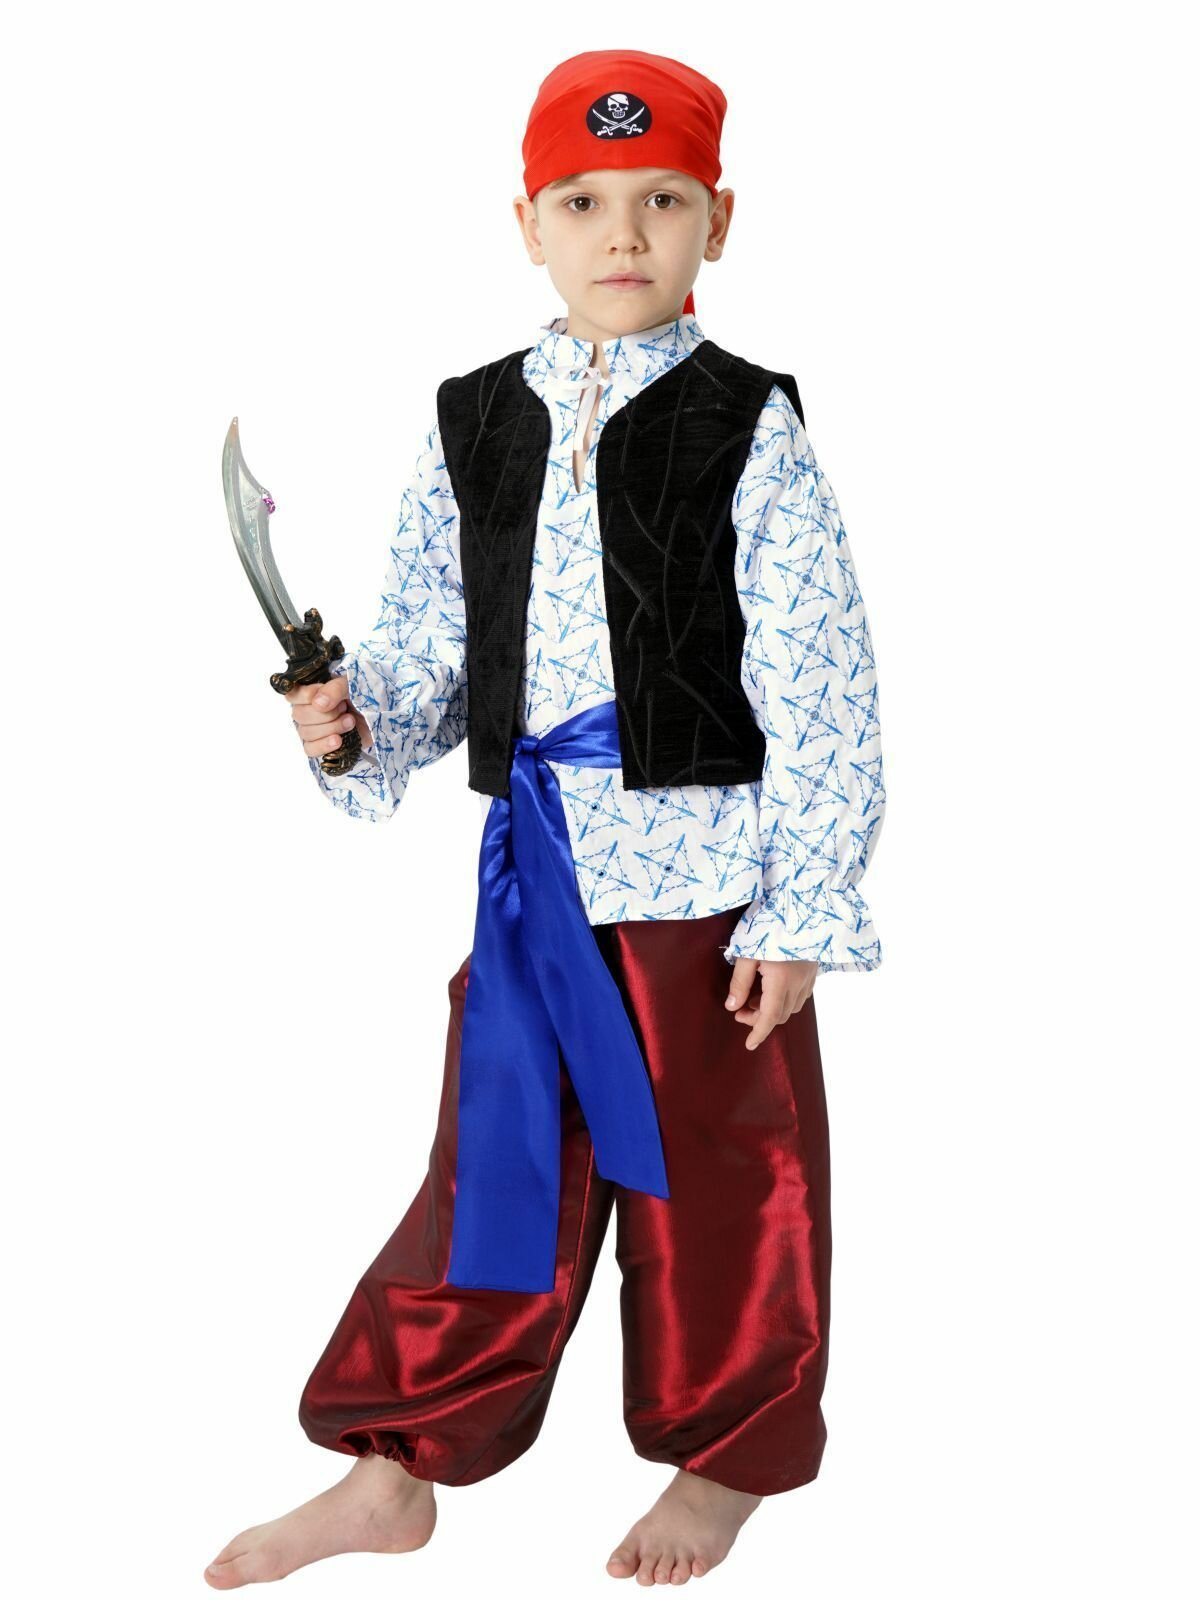 Карнавальный костюм детский Пират Билл